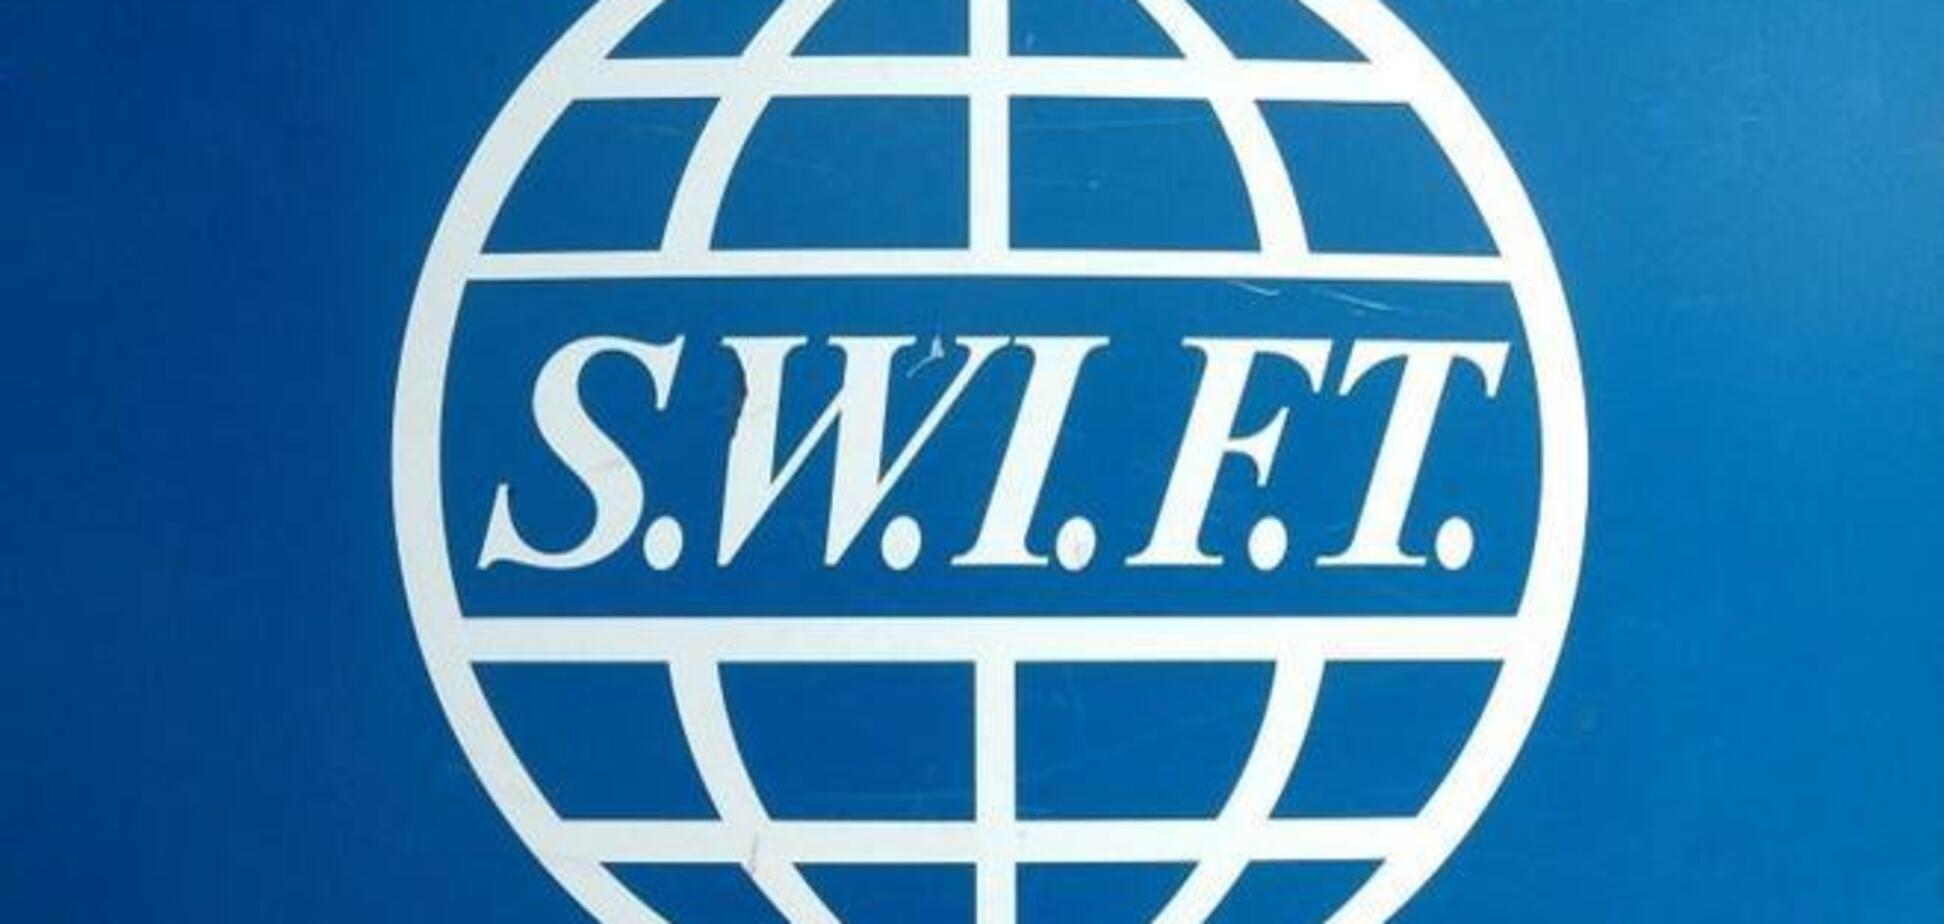 Межбанковскую систему SWIFT обязали зарегистрировать юрлицо в России